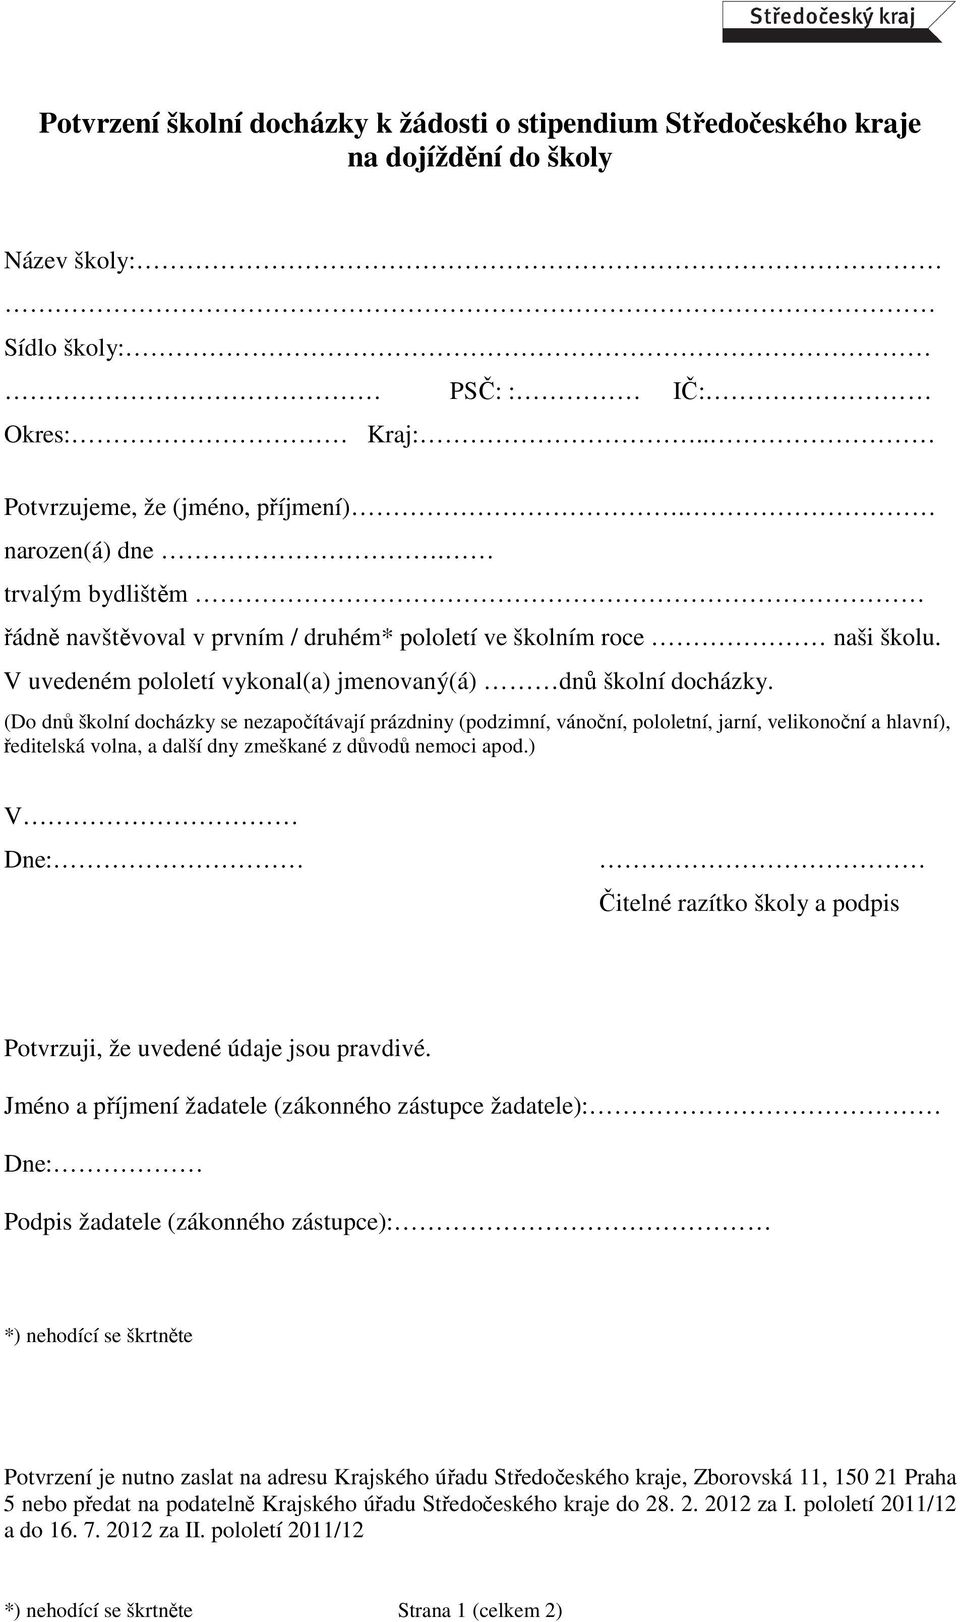 Potvrzení školní docházky k žádosti o stipendium Středočeského kraje na dojíždění  do školy - PDF Stažení zdarma